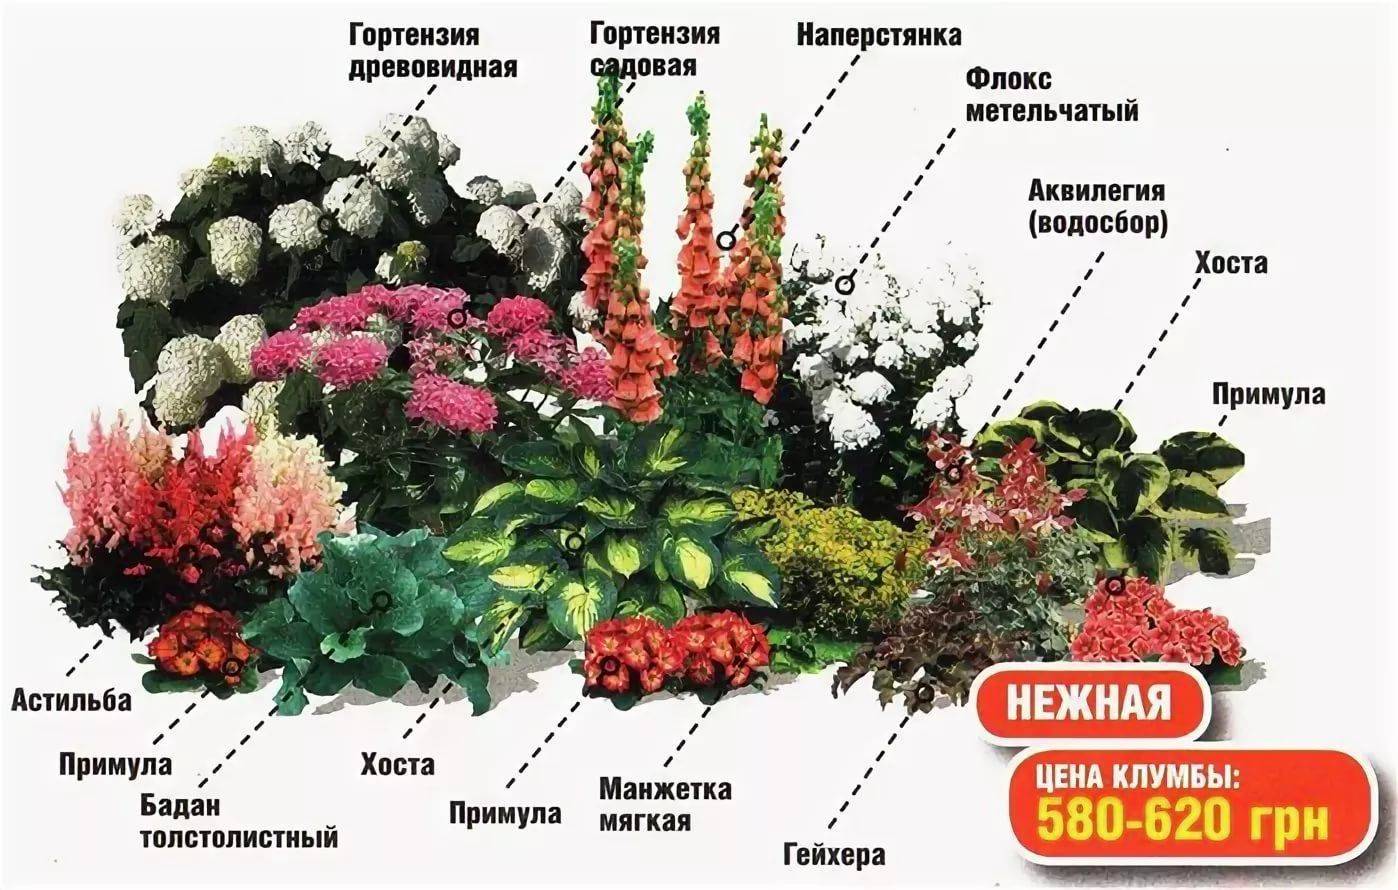 Как сделать клумбу из многолетников, чтобы цвела все лето - goodogorod.ru